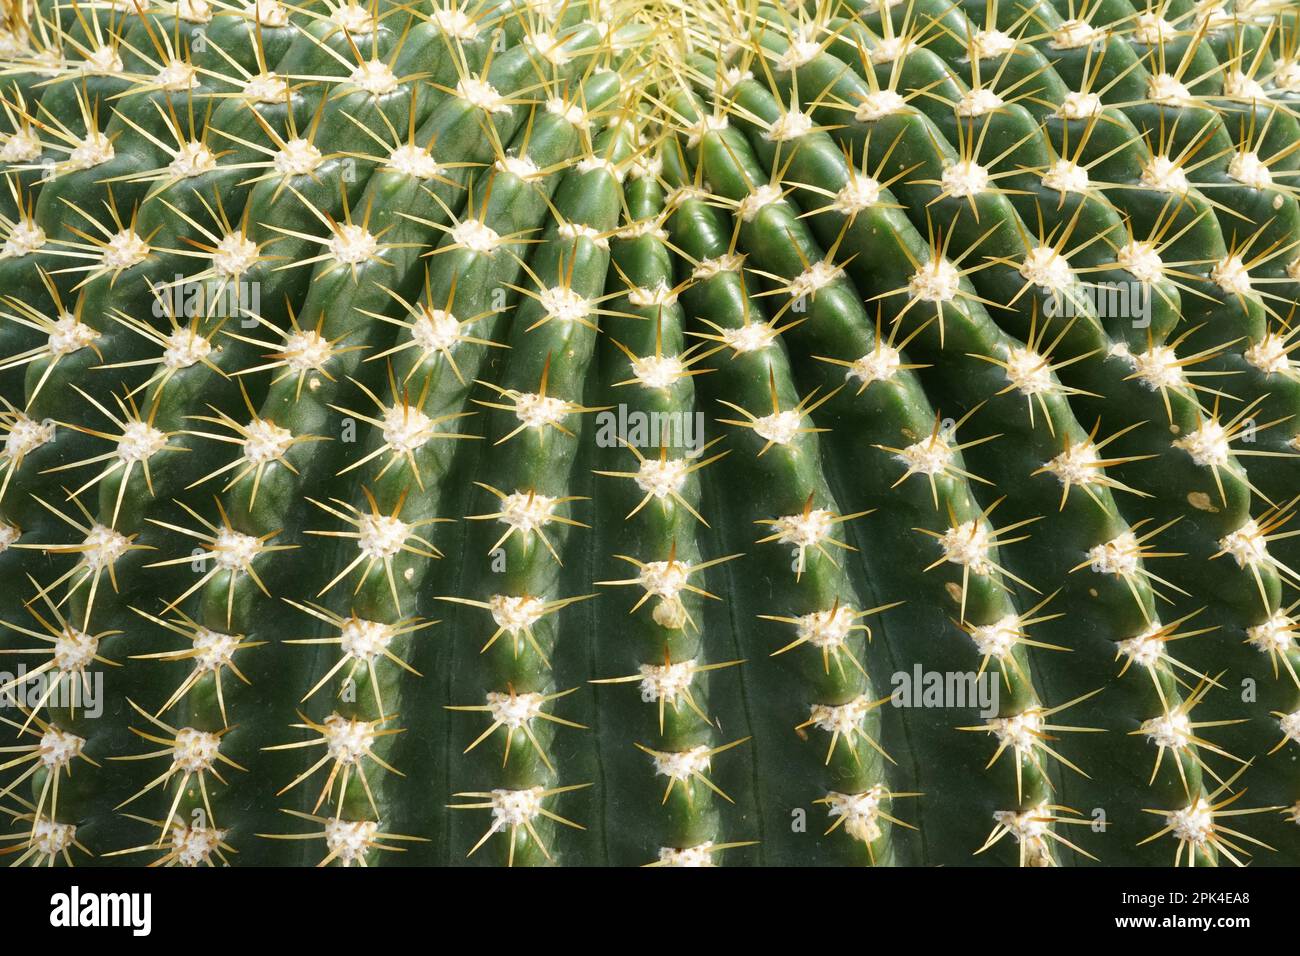 Découpe d'un cactus globulaire avec des côtes se rencontrant concentriques sur le dessus de la plante. Il y a des aréoles sur les côtes avec plusieurs épines jaunes courtes. Banque D'Images